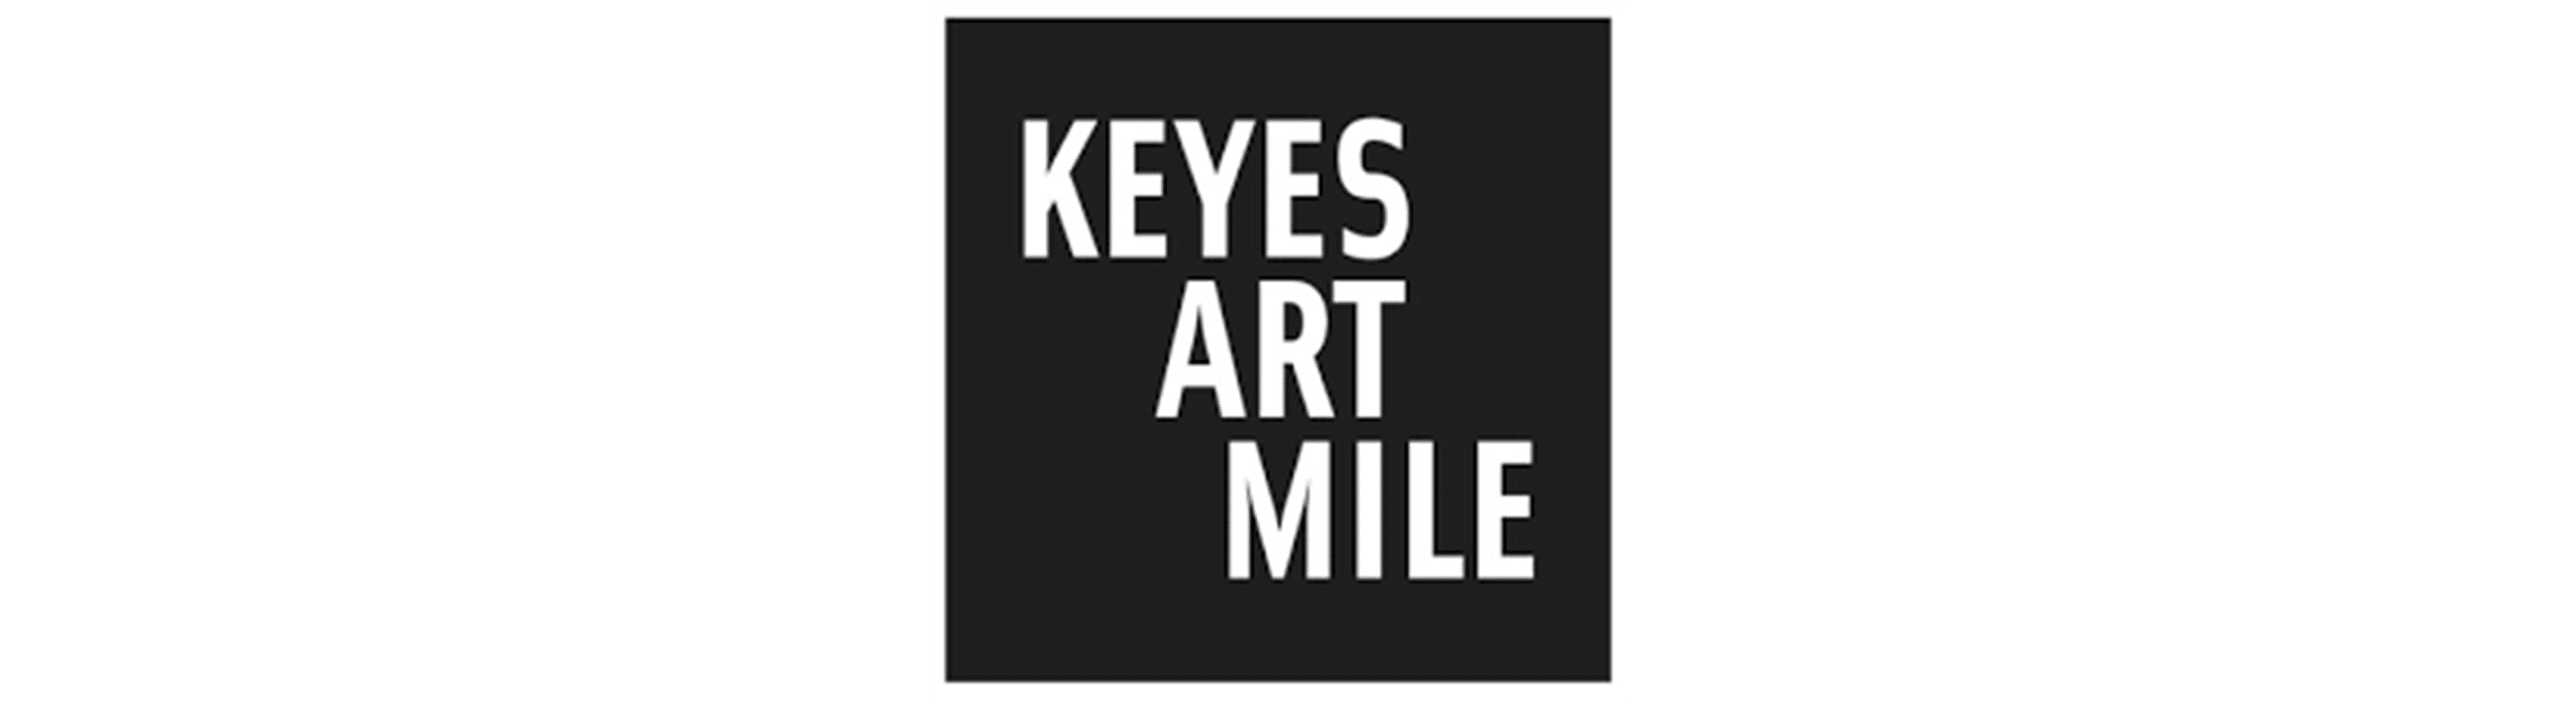 Keyes Art Mile